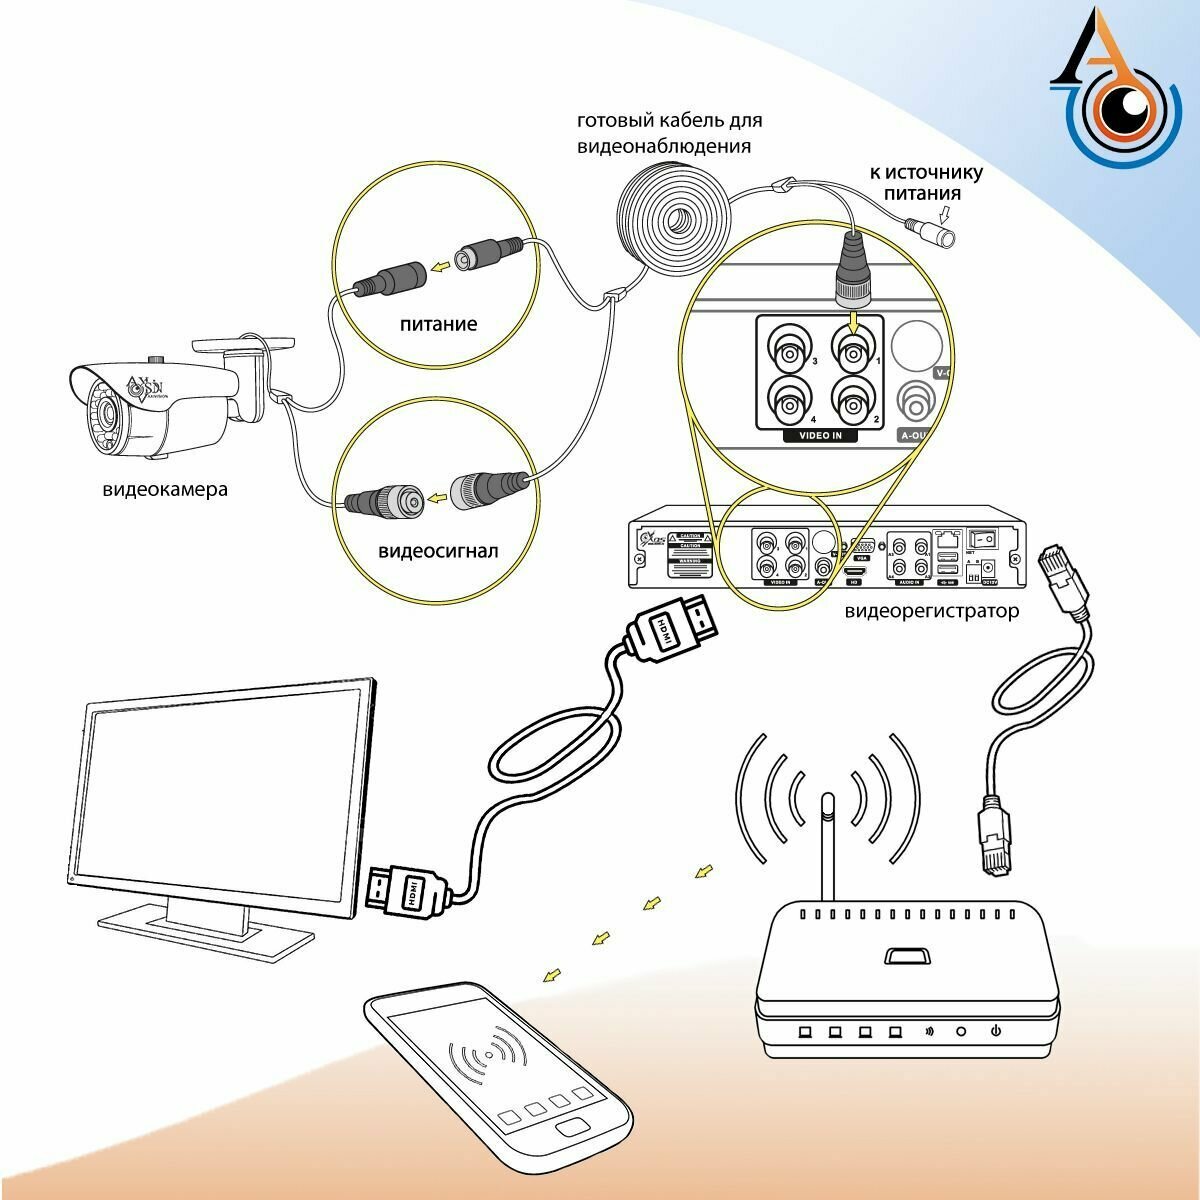 8-и канальный гибридный видеорегистратор Axios axi-082 h265 для аналоговых и IP систем видеонаблюдения с поддержкой камер до 5-ти мегапикселей